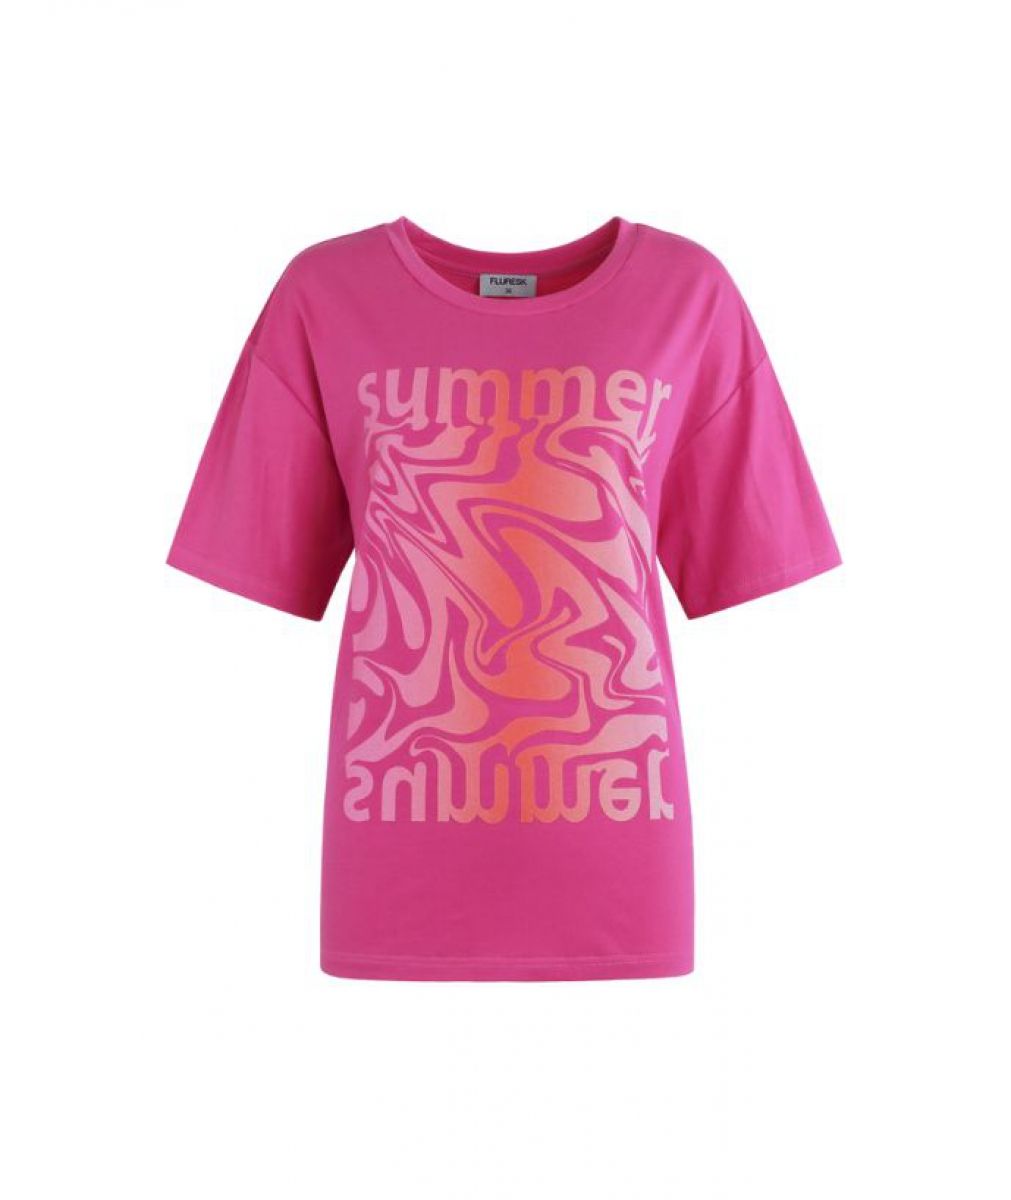 Isaleigh T-shirt Roze